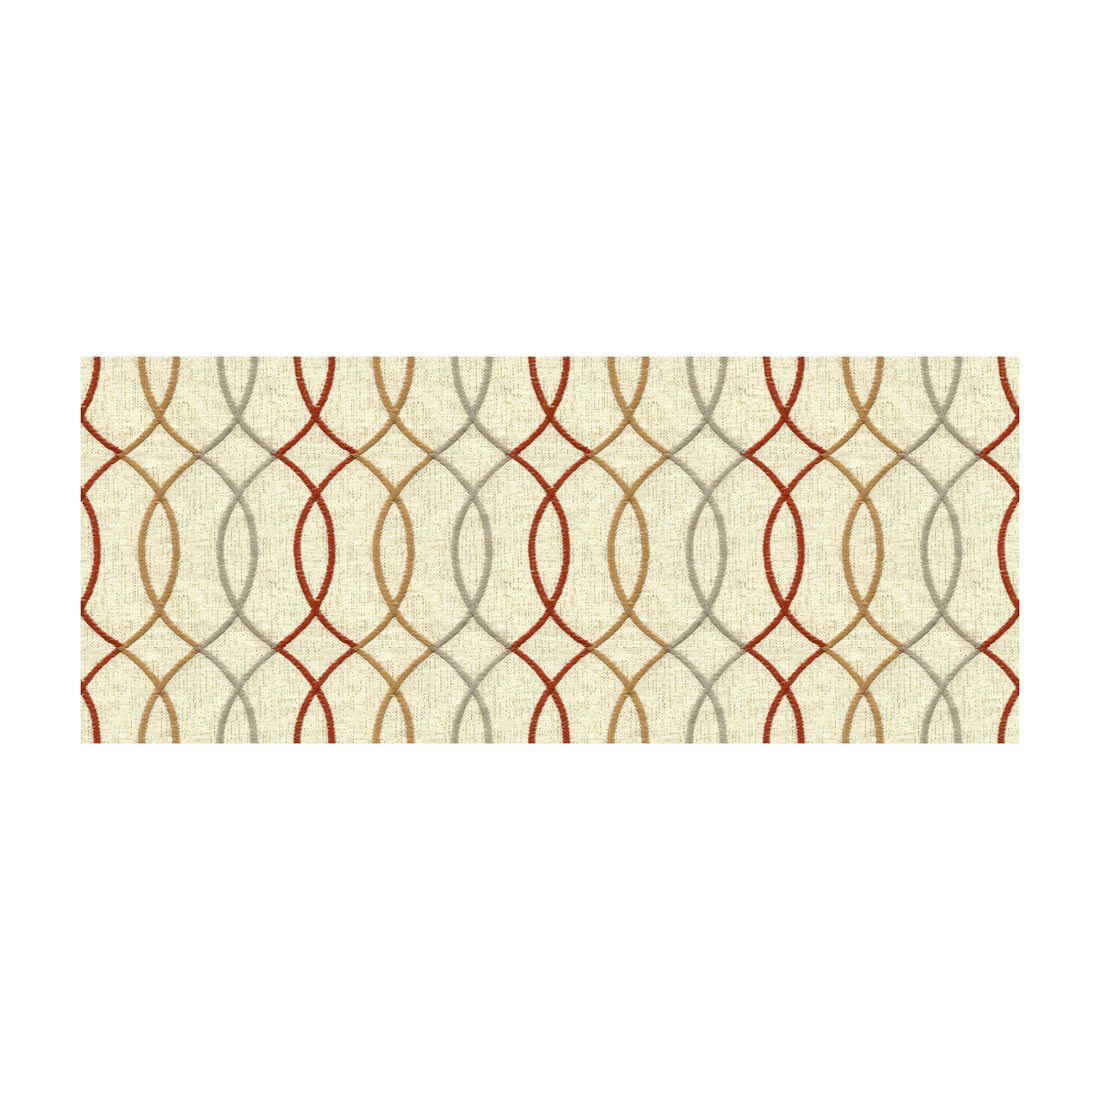 Kravet Design fabric in 33217-419 color - pattern 33217.419.0 - by Kravet Design in the Kravet Colors collection